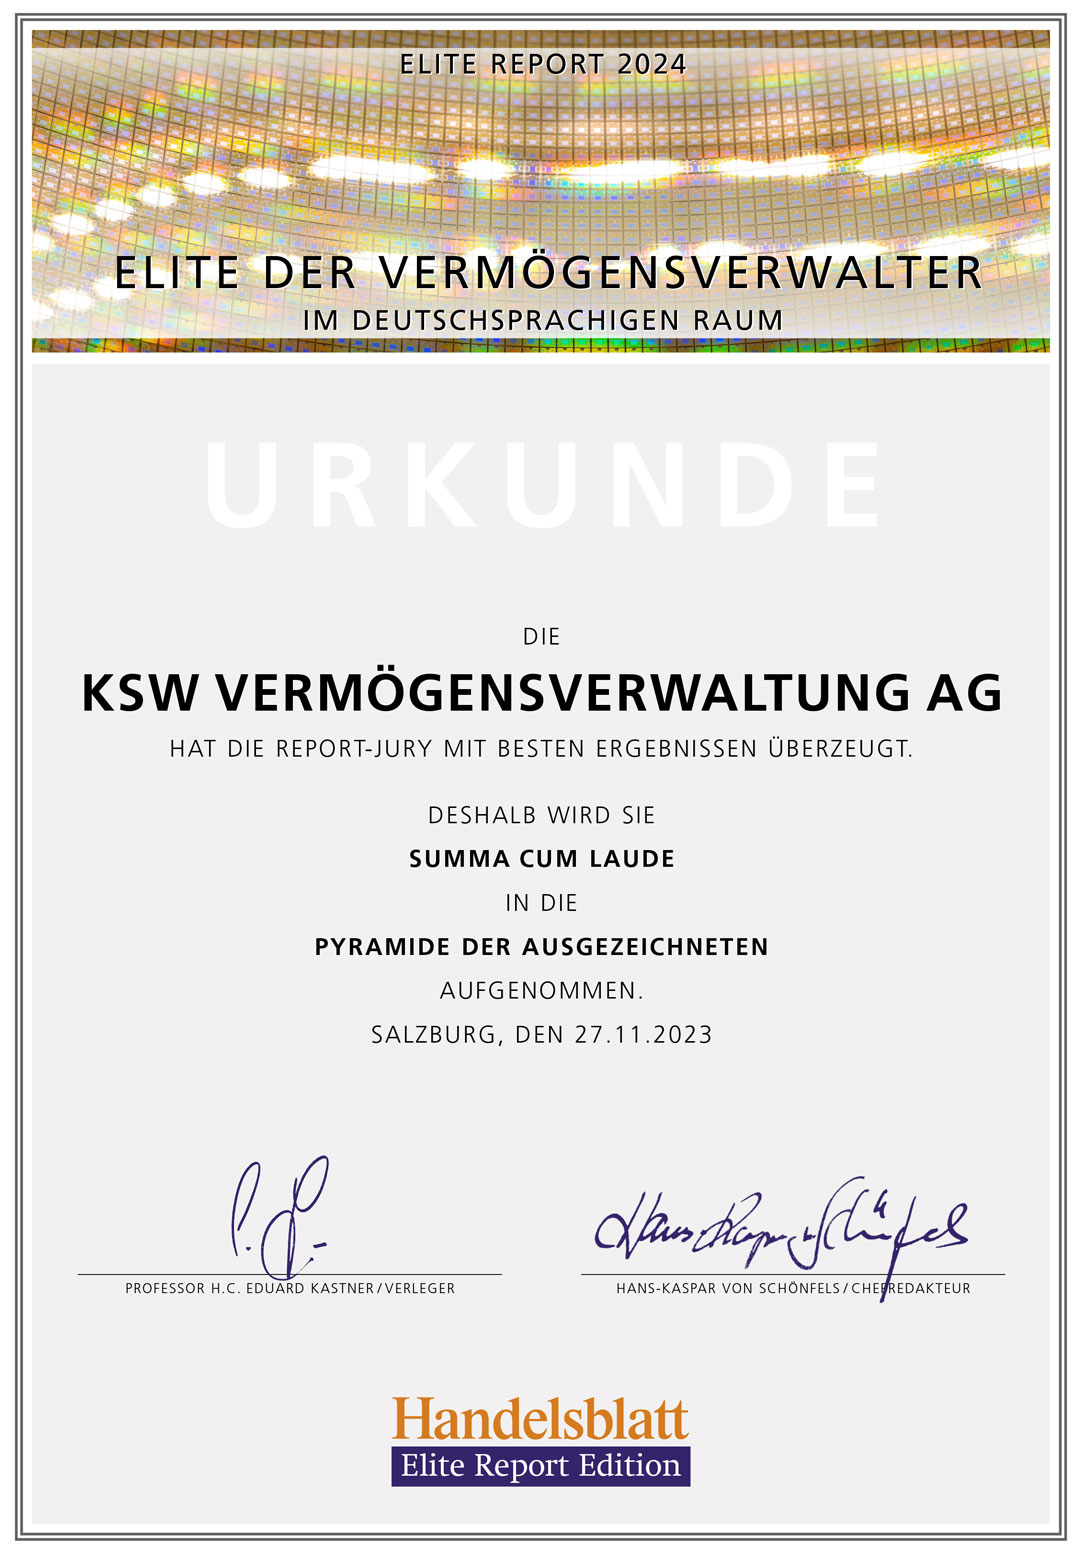 Elite Report 2024 Urkunde summa cum laude für die KSW Vermögensverwaltung AG